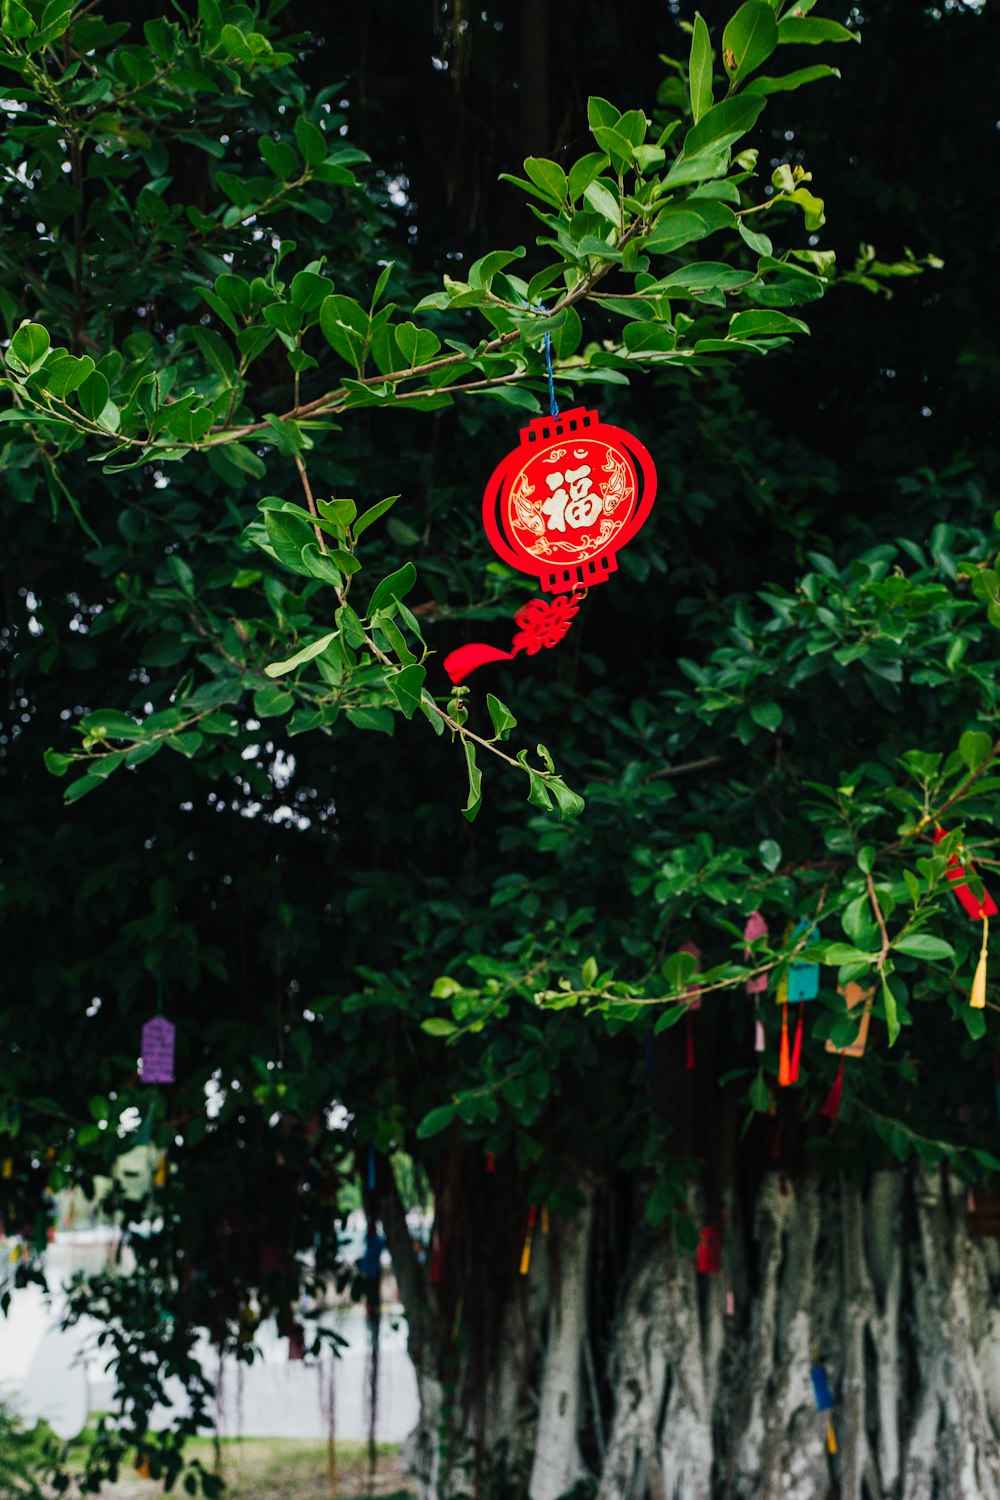 Una lanterna di carta rossa appesa a un albero